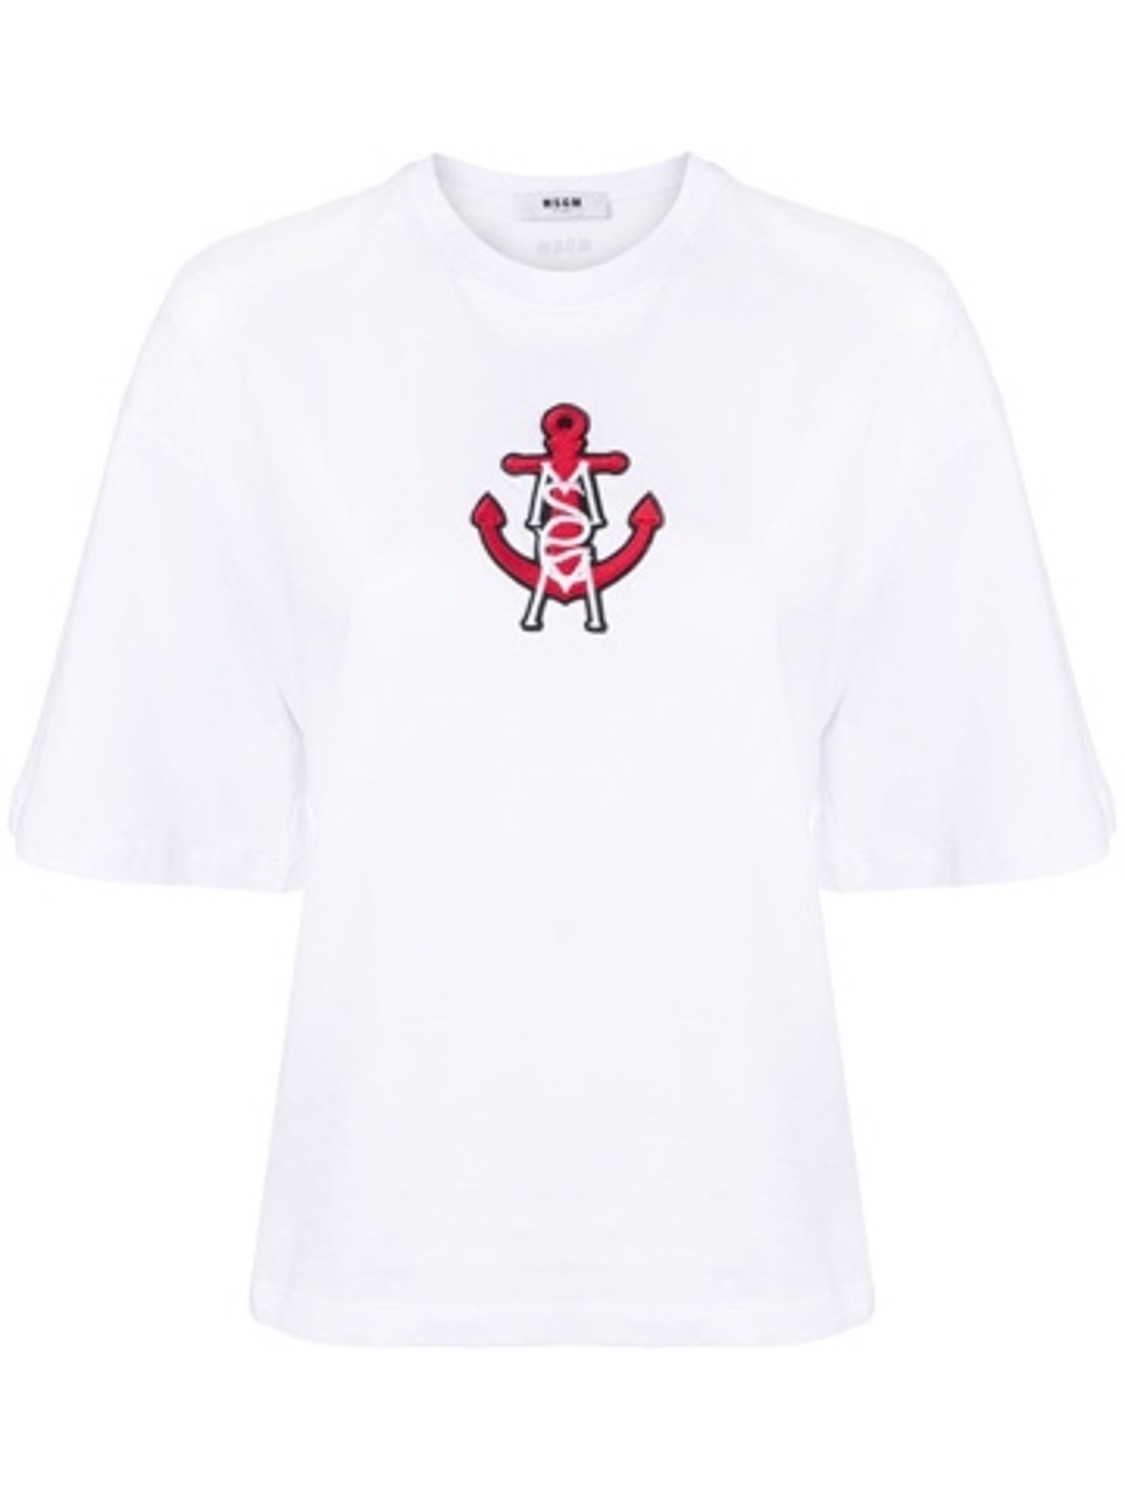 shop MSGM  T-shirts: T-shirt MSGM, girocollo, manica 3/4, logo sul davanti, fit ampio.

Composizione: 100% cotone. number 1436